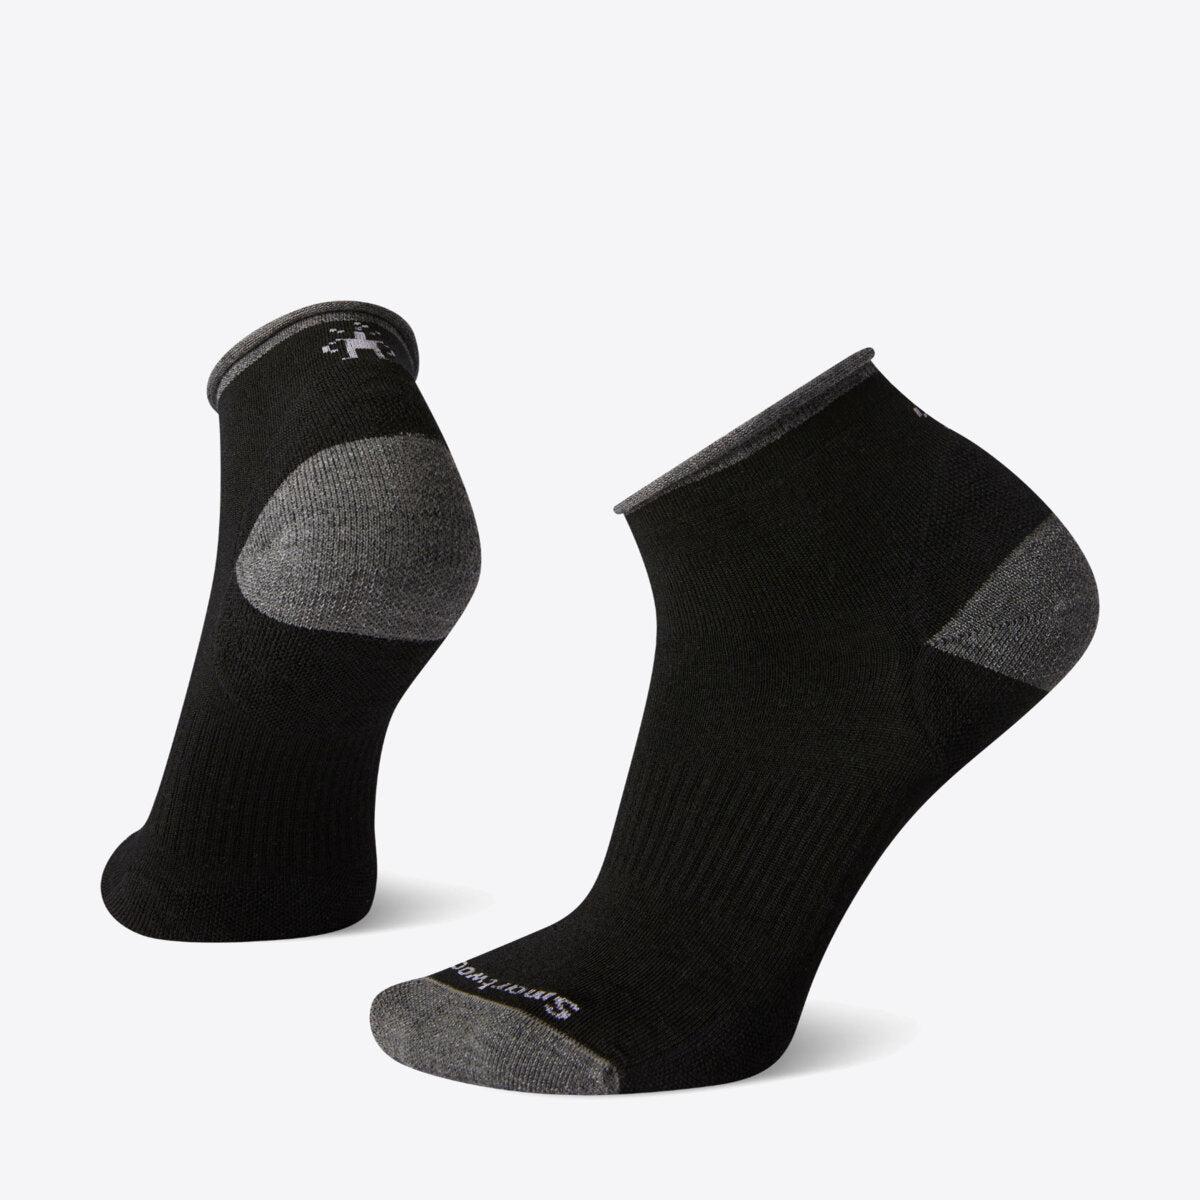  Women's Basic Mini Boot Socks Black